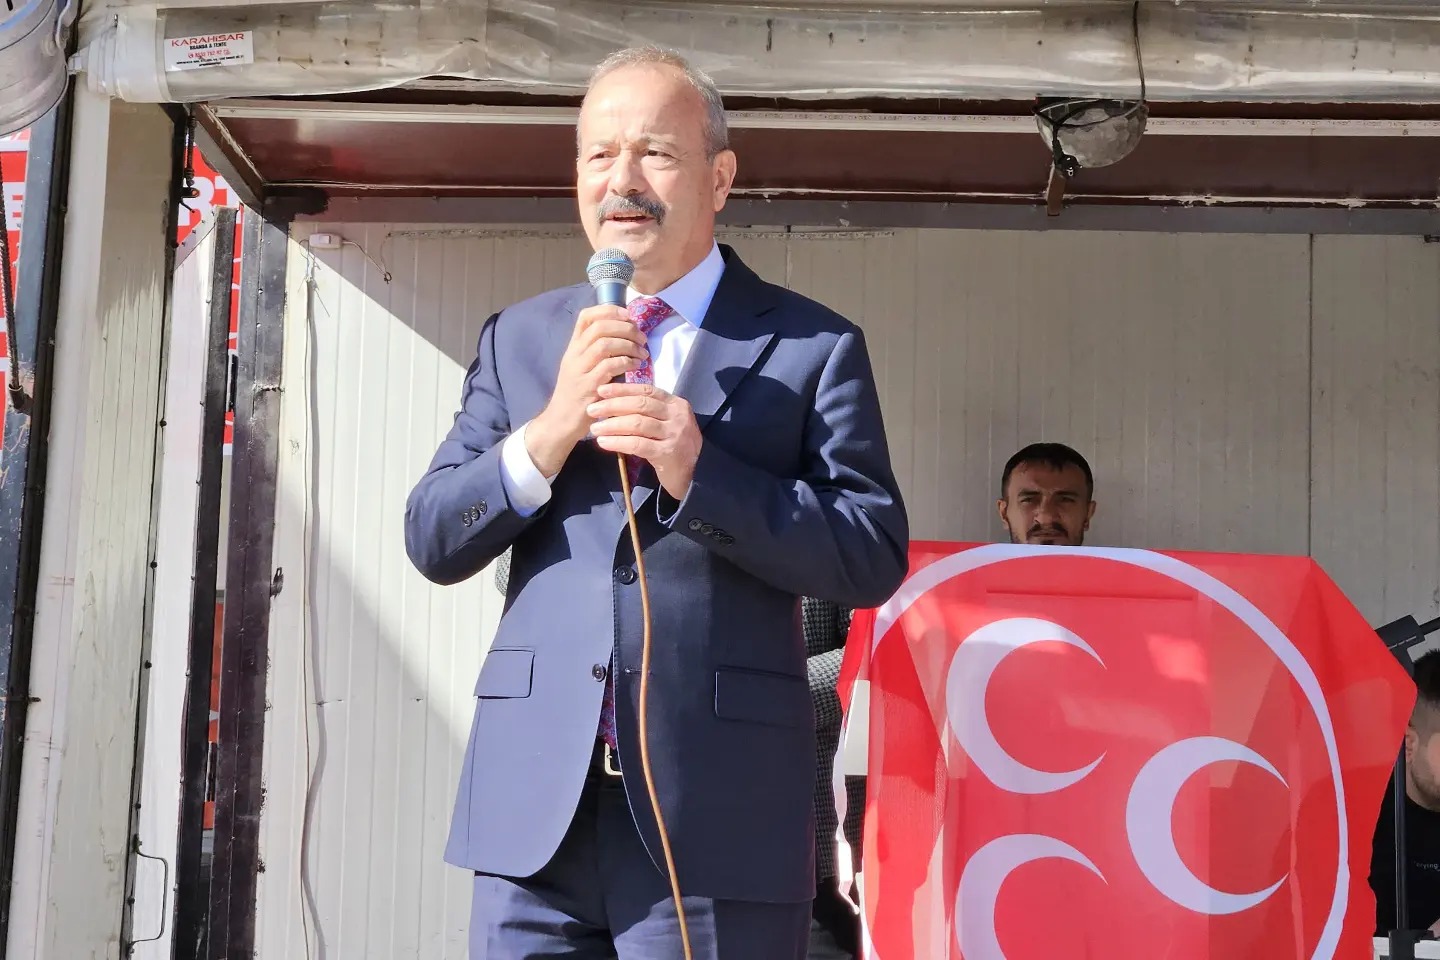 Milletvekili Taytak, Afyonkarahisar’ın ilçe ve beldelerinde 58 seçim bürosunun açılışını tamamladı